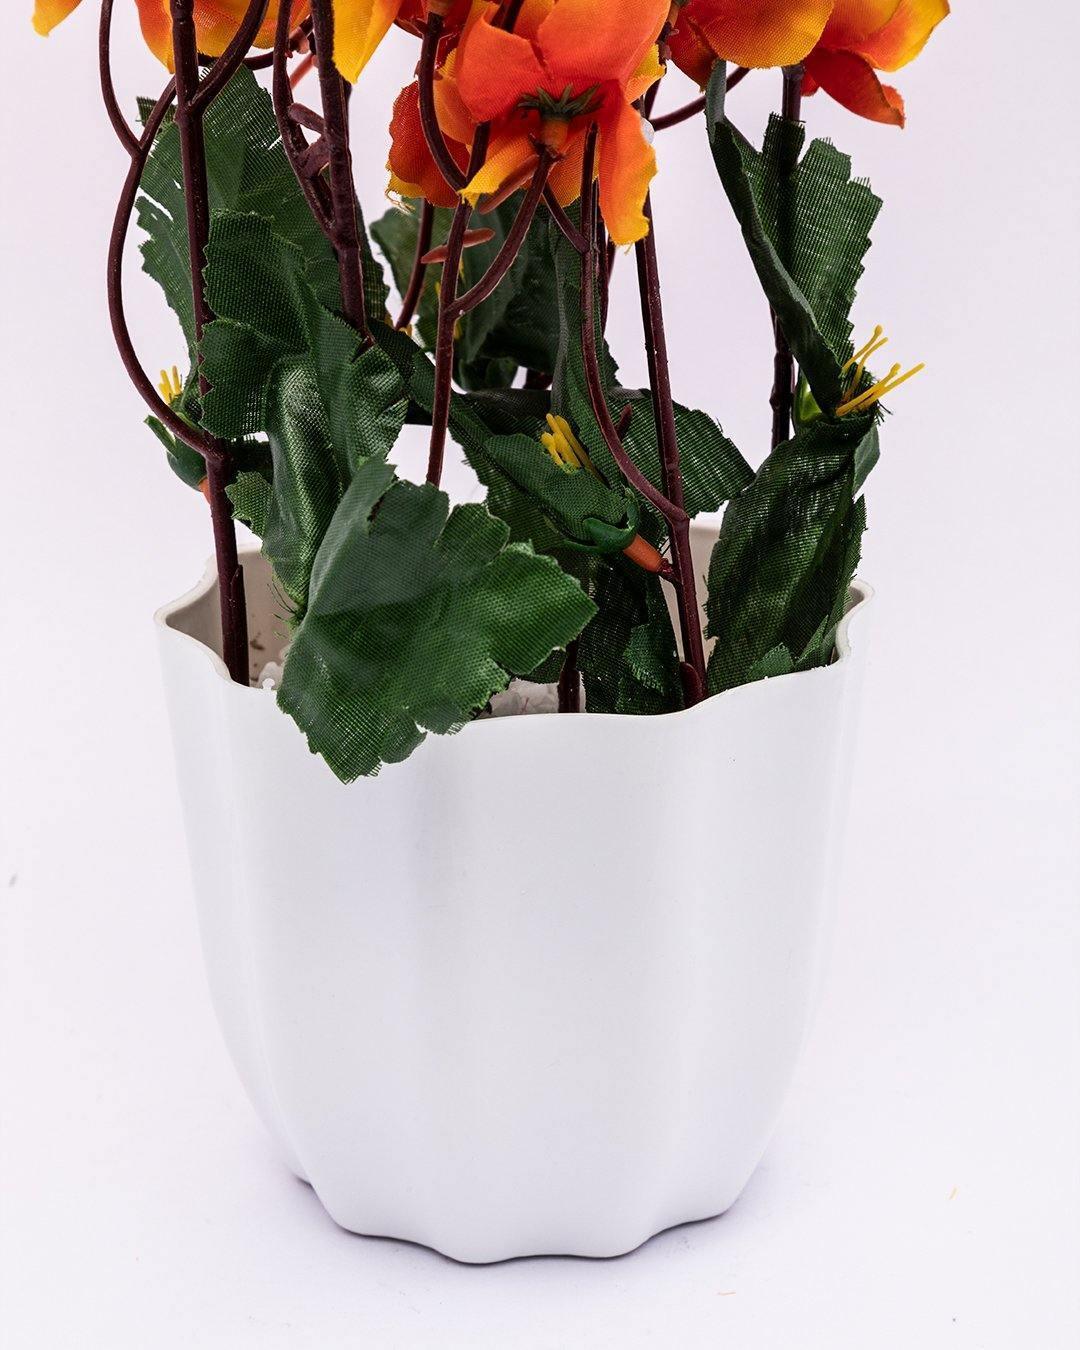 Artificial Flower Plant with White Pot, Blossoms, Orange, Plastic Plant - MARKET 99